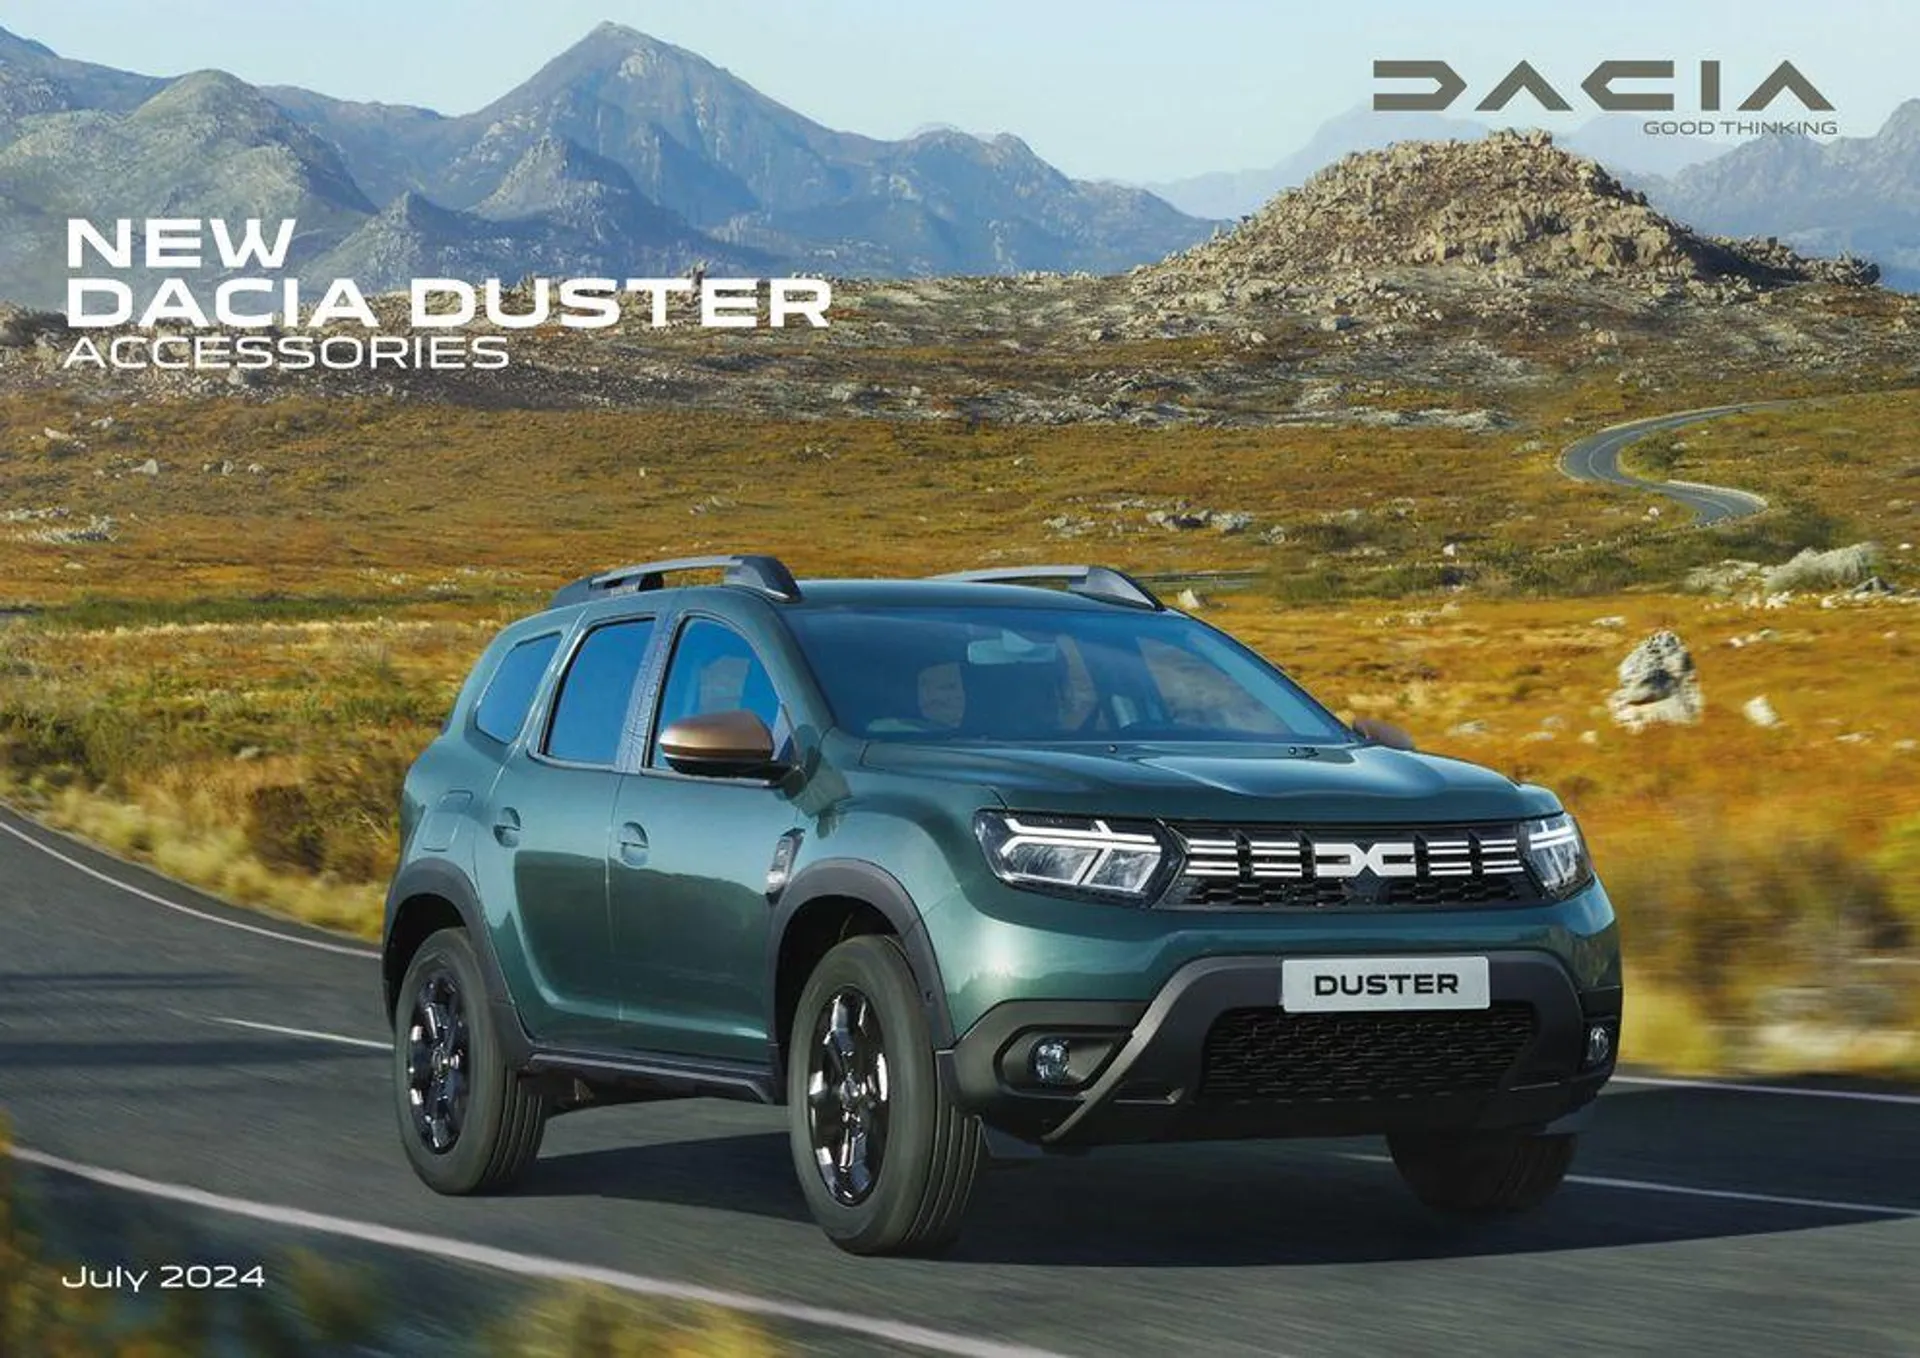 New Dacia Duster Accessories - 1